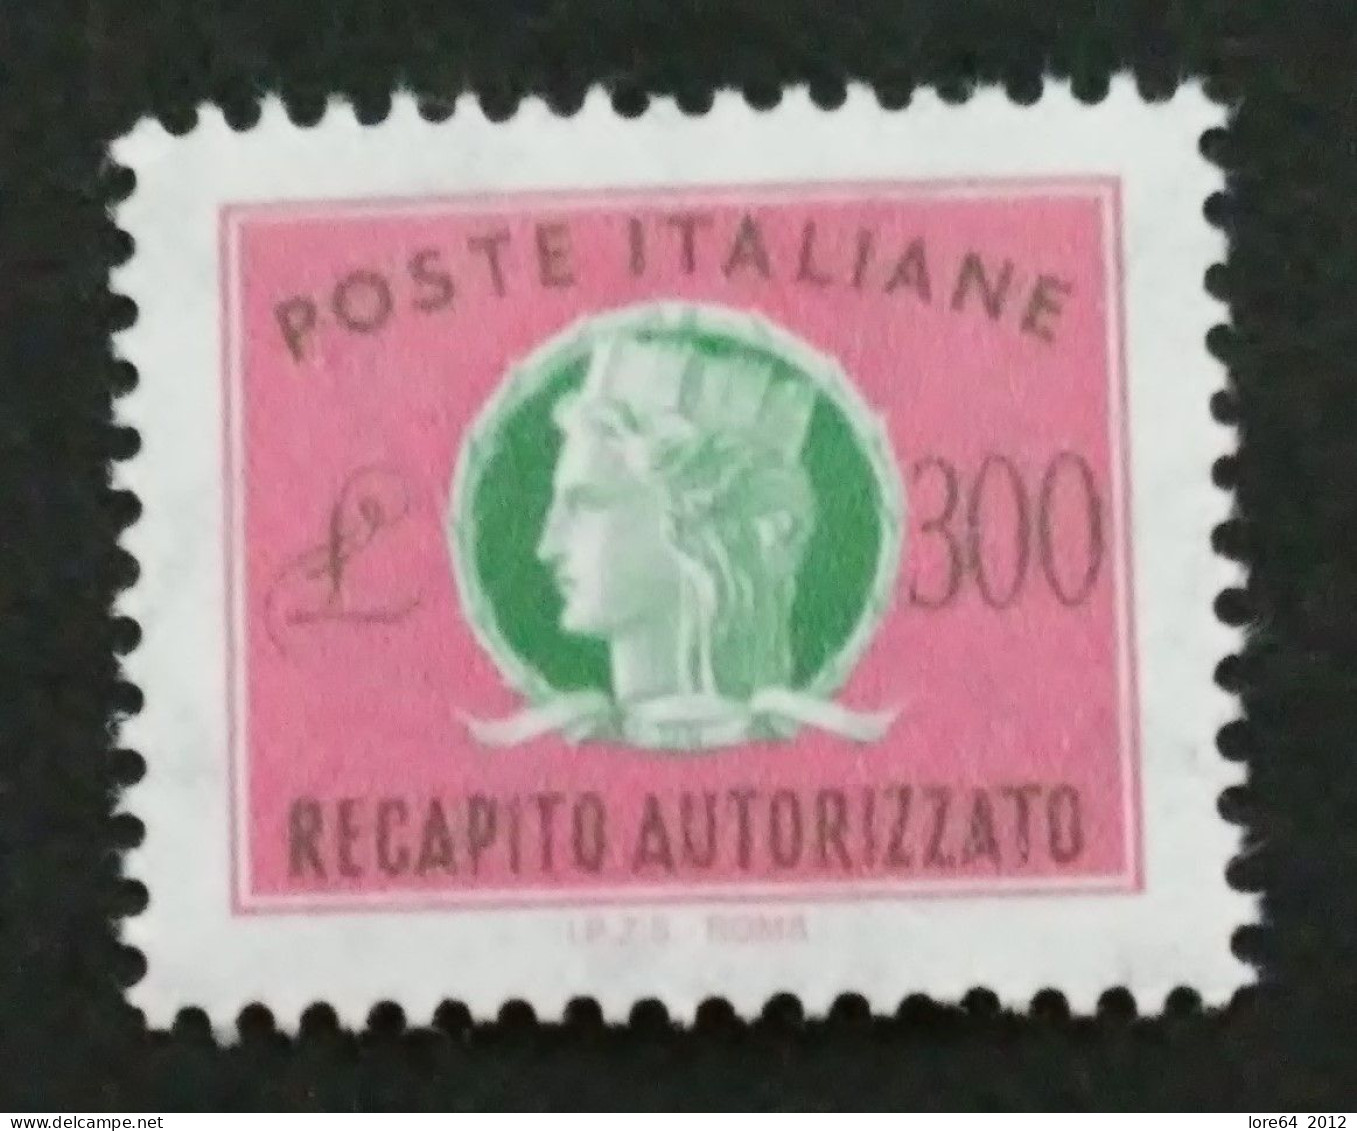 ITALIA 1987 - Recapito Autorizzato N° Catalogo Unificato 17 Nuovo** - Express/pneumatic Mail